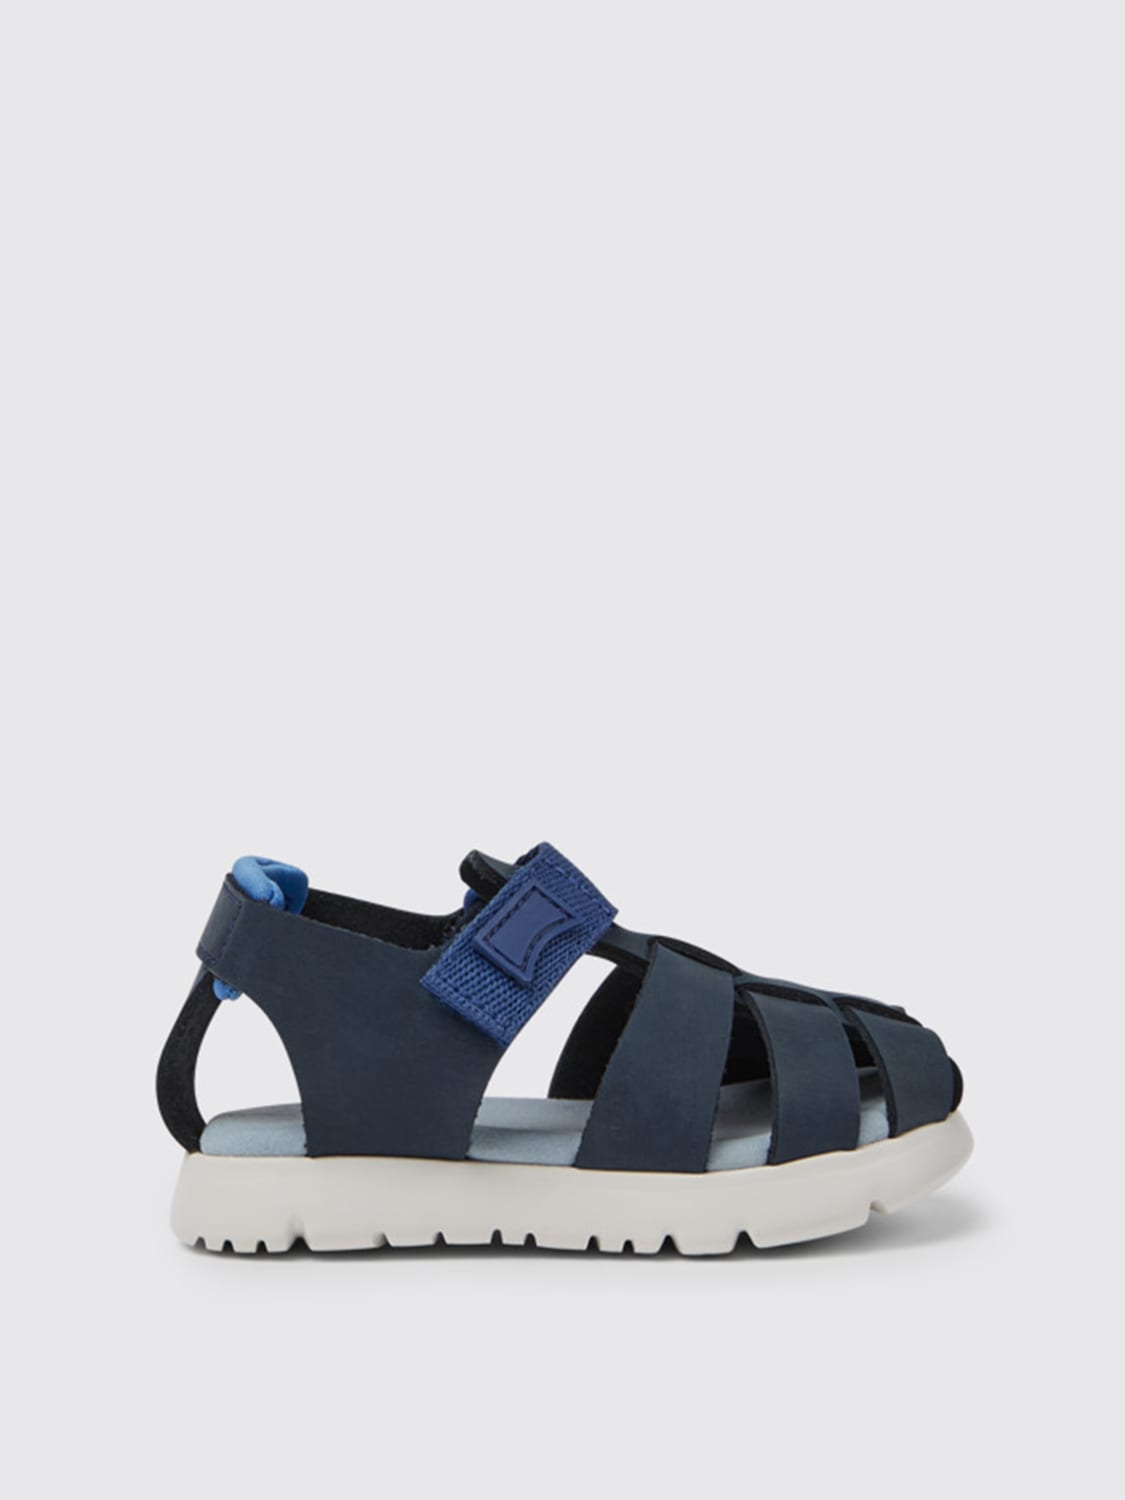 Camper Outlet: Oruga sandals in calfskin and fabric - Blue | Camper shoes K800489-001 ORUGA online on